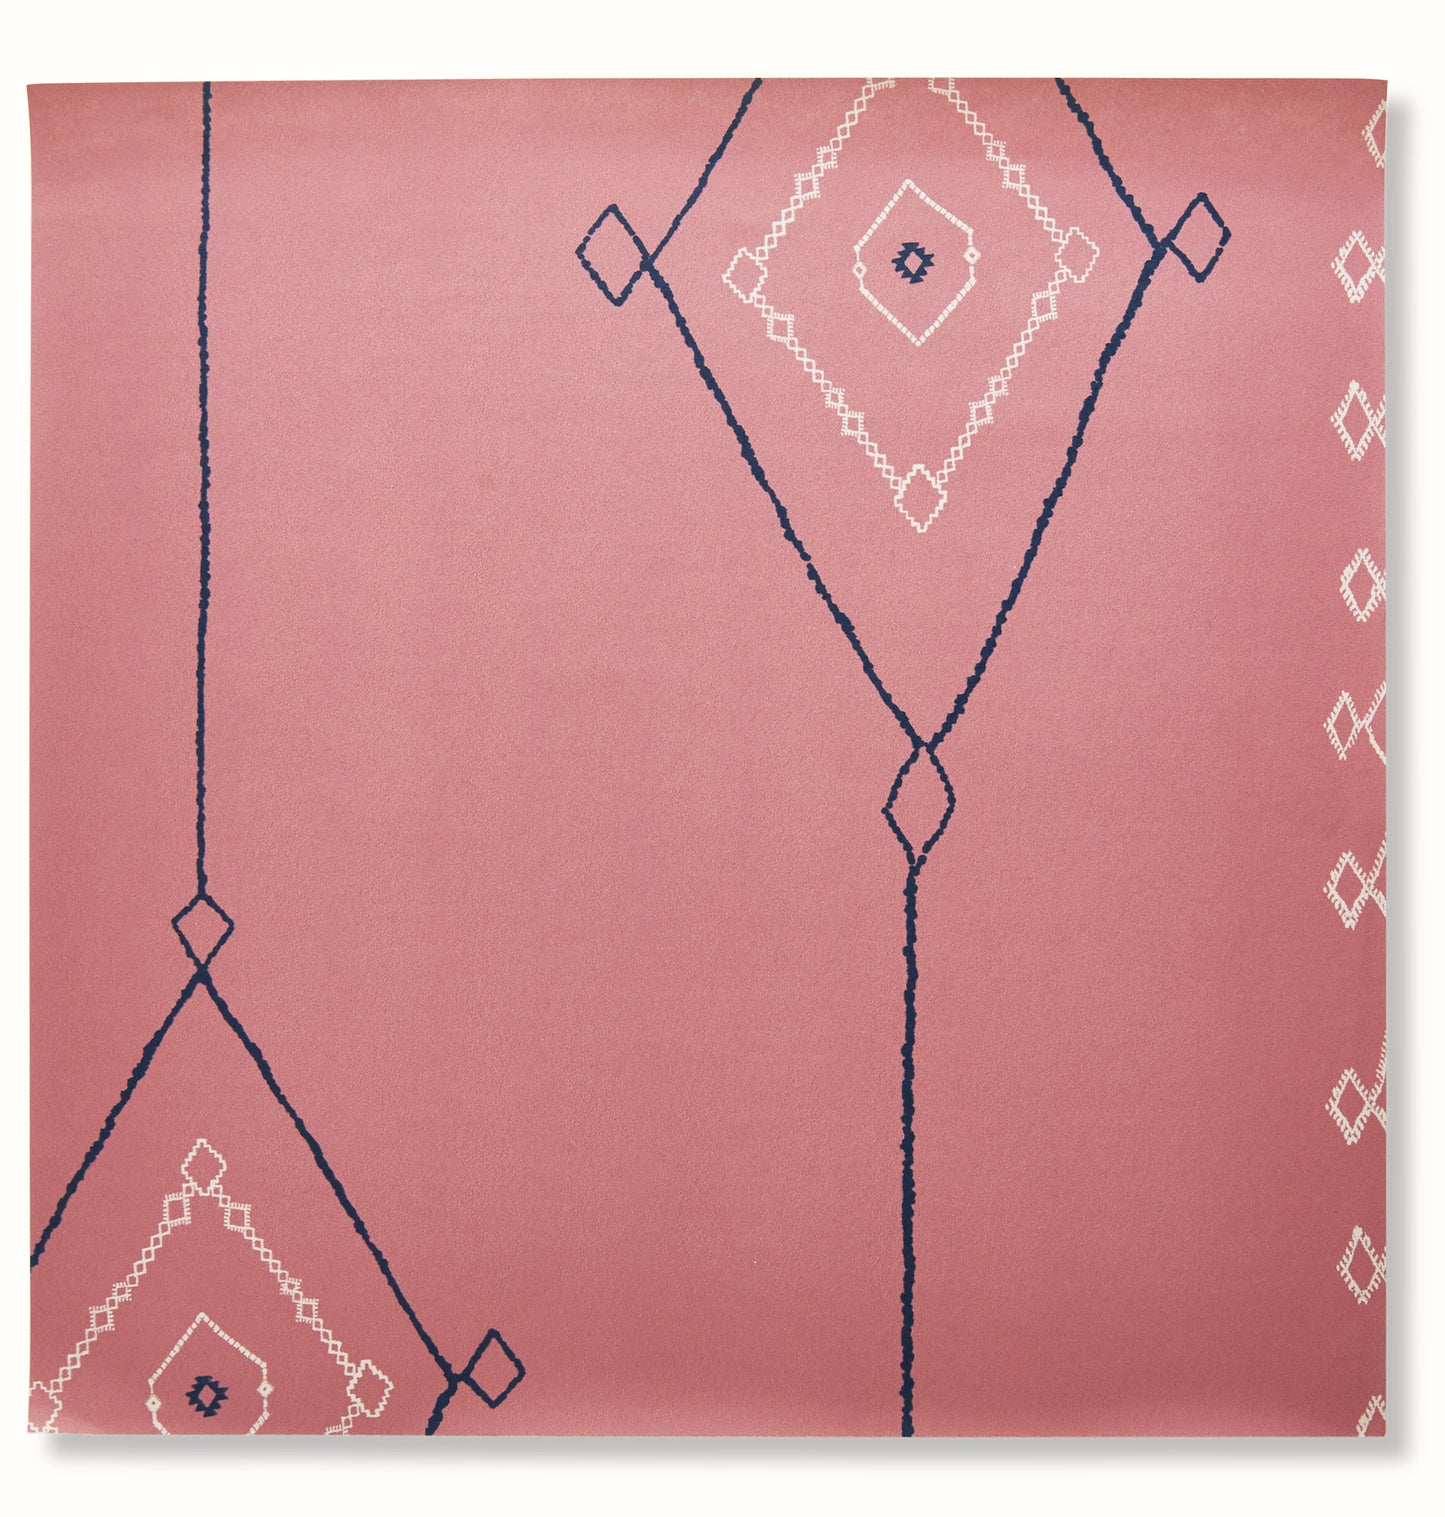 Khyber Wallpaper - Pink